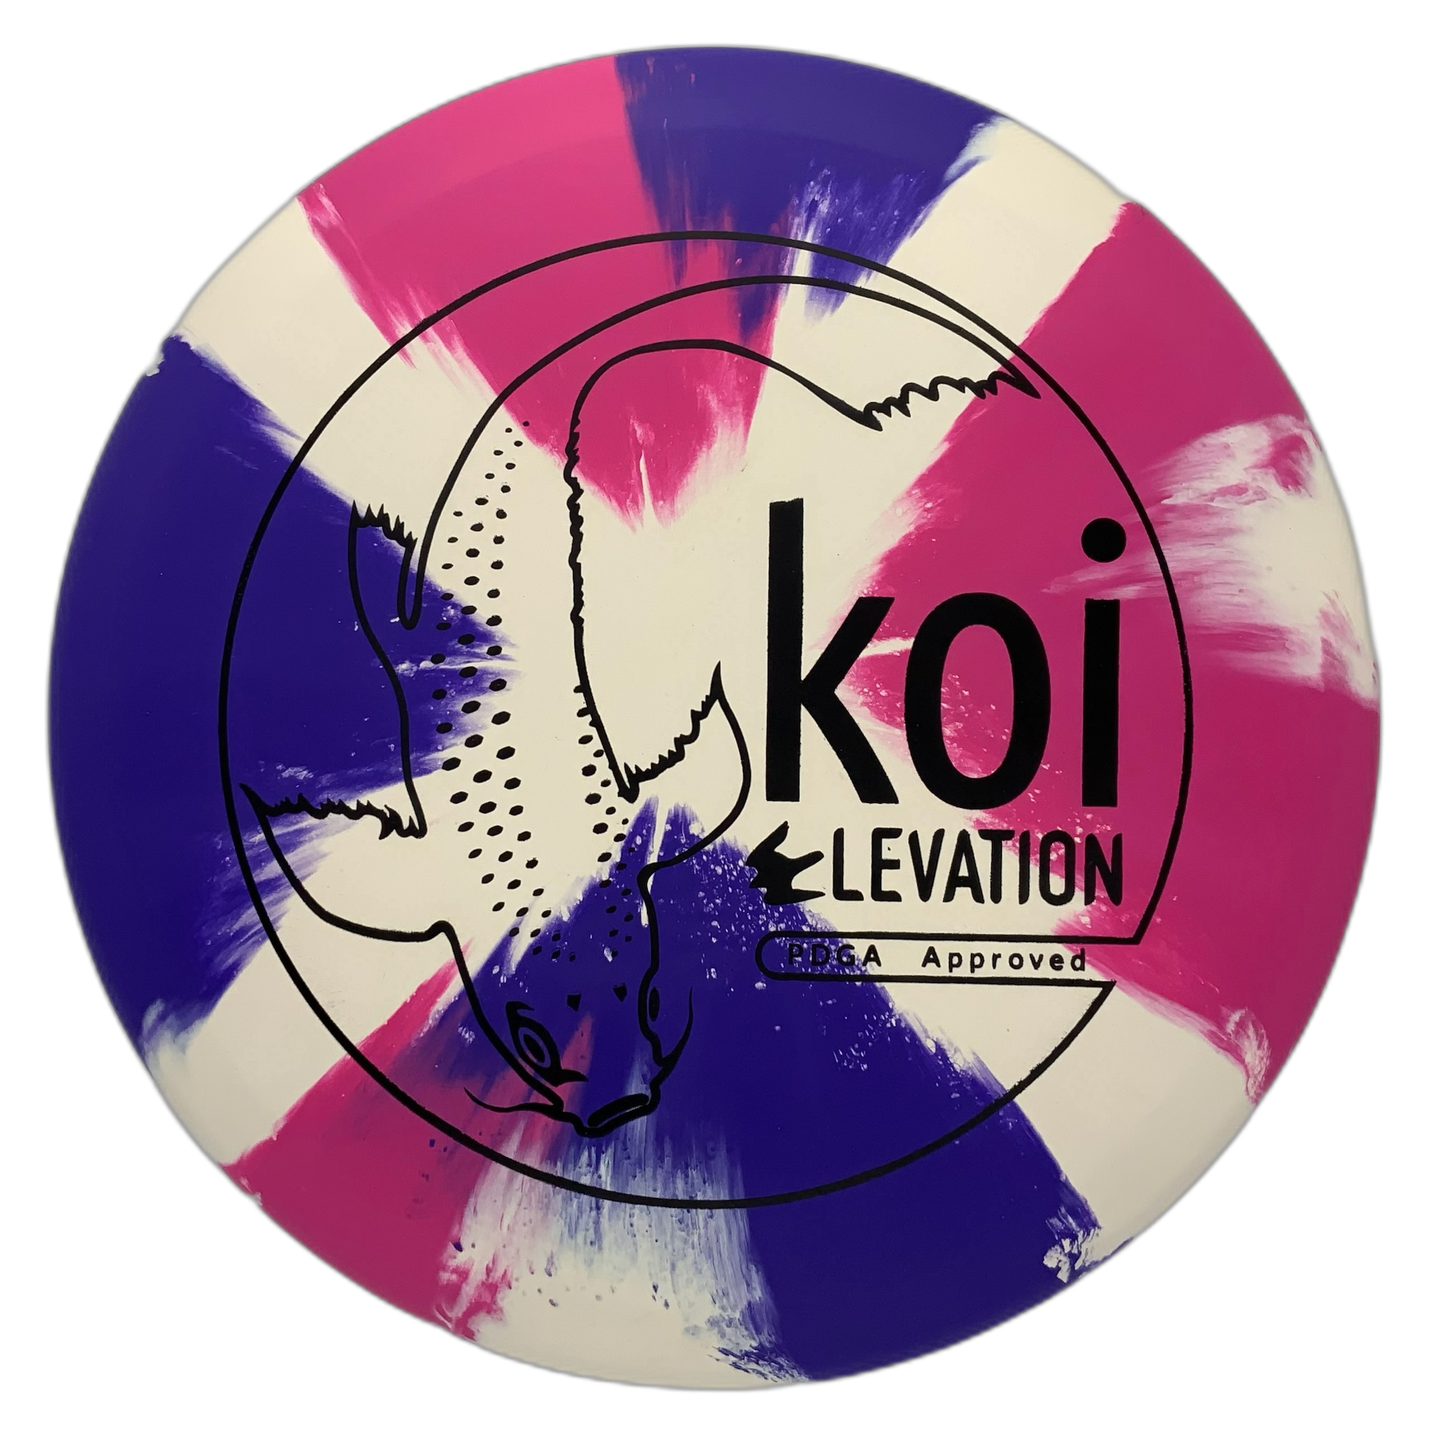 Elevation Koi - Astro Discs TX - Houston Disc Golf